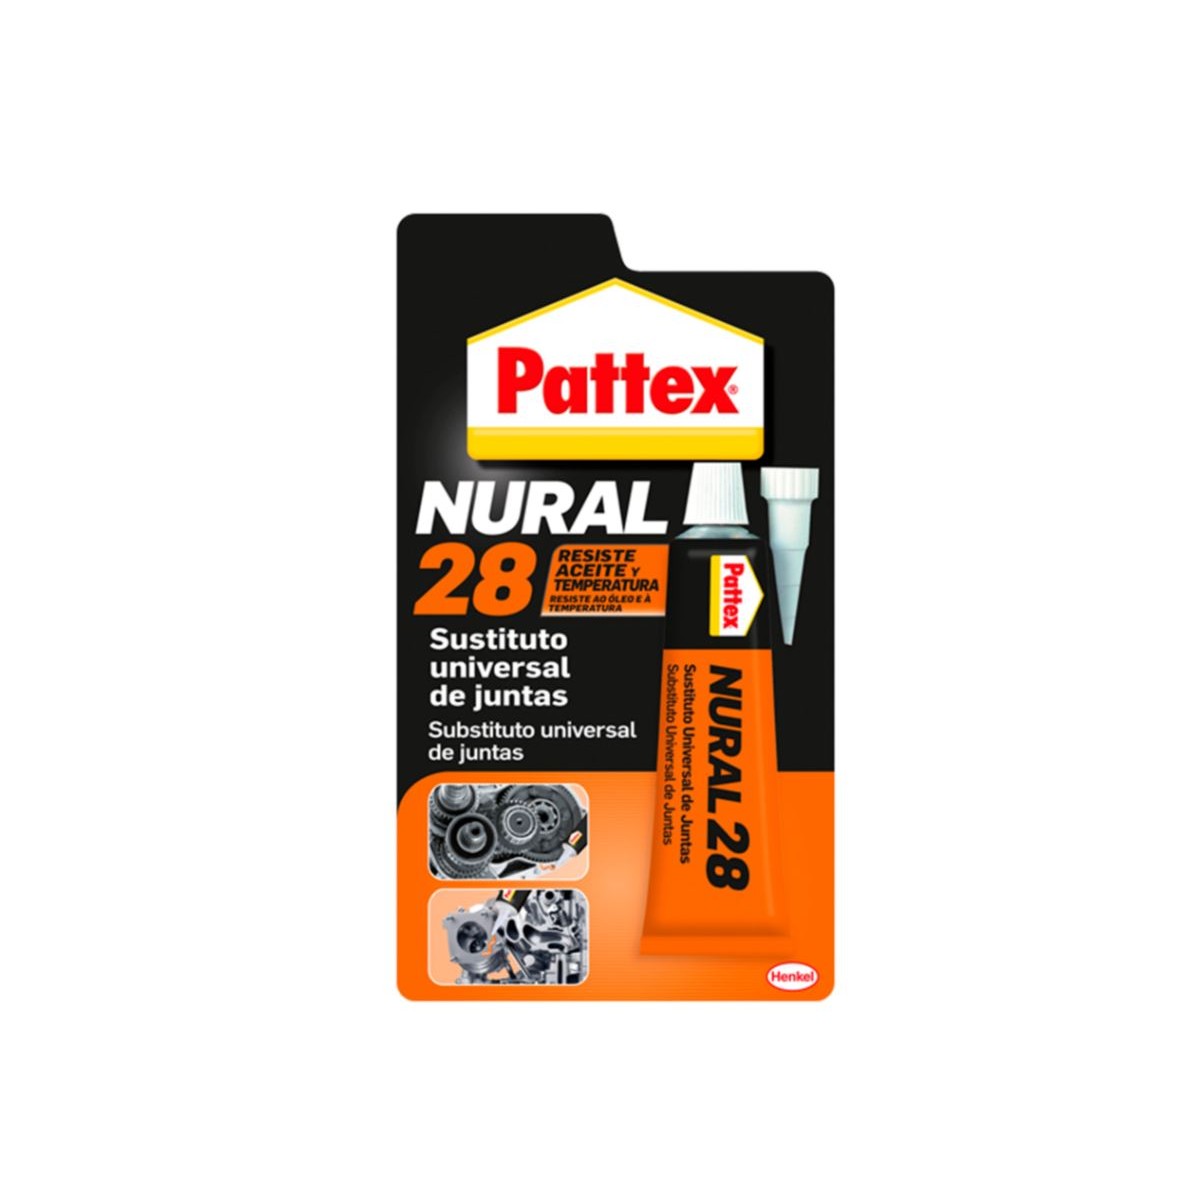 Henkel pattex nural 28 de 75 ml juntas estuche 1755651